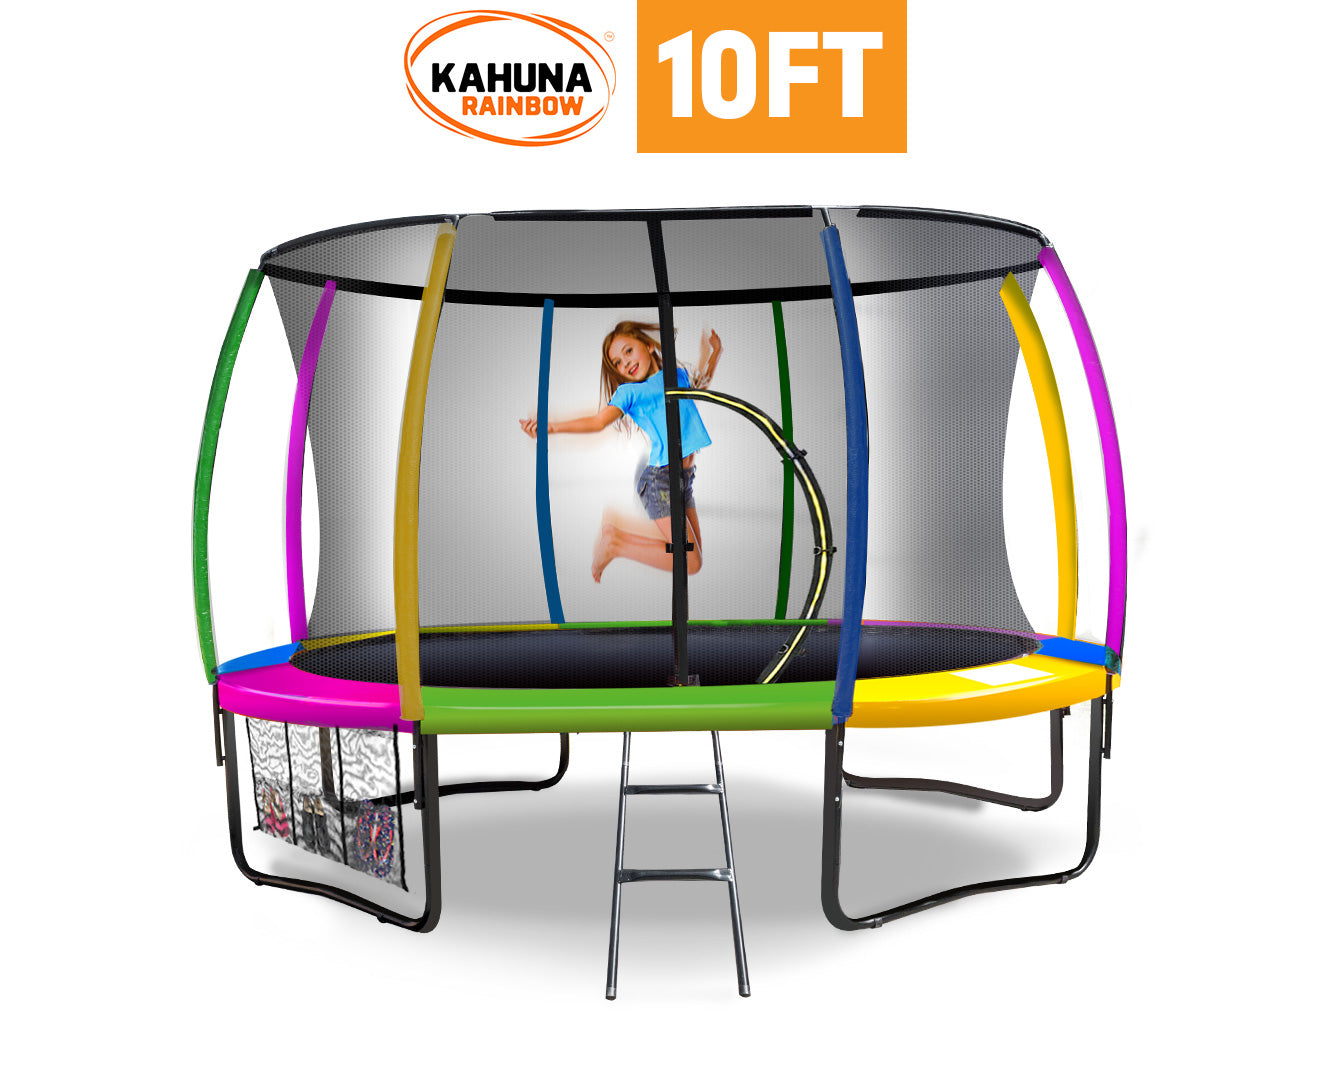 Kahuna Rainbow 10ft Trampoline